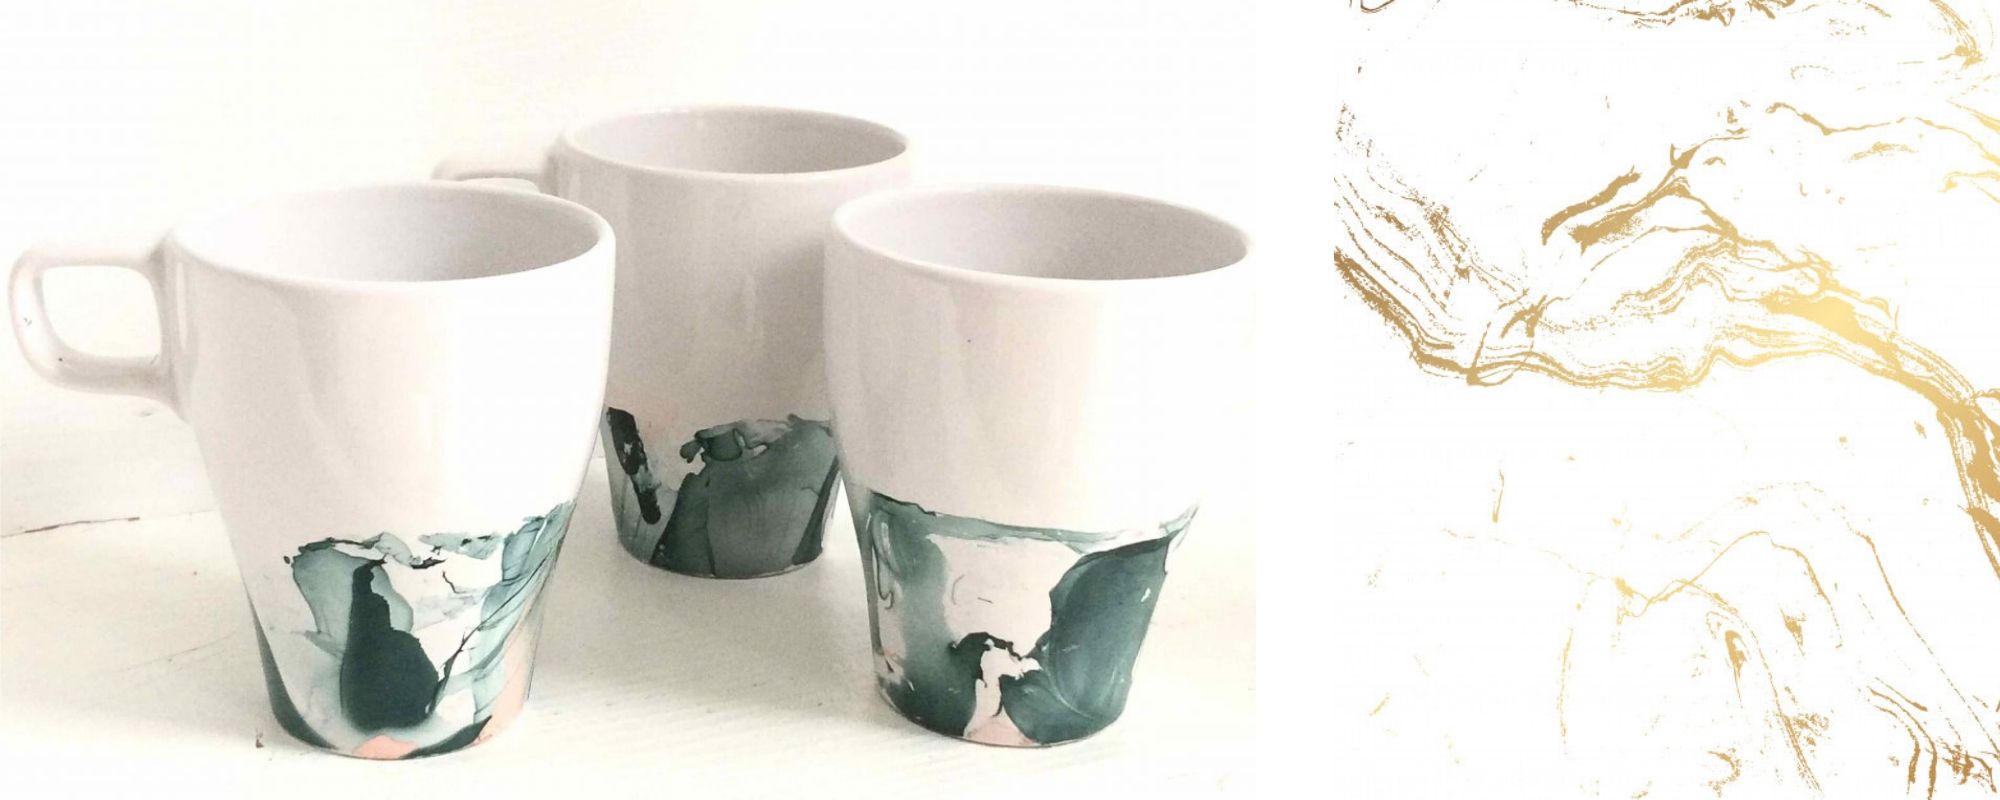 Le mug “marbre” : Un cadeau express et créatif pour la fête des mères !